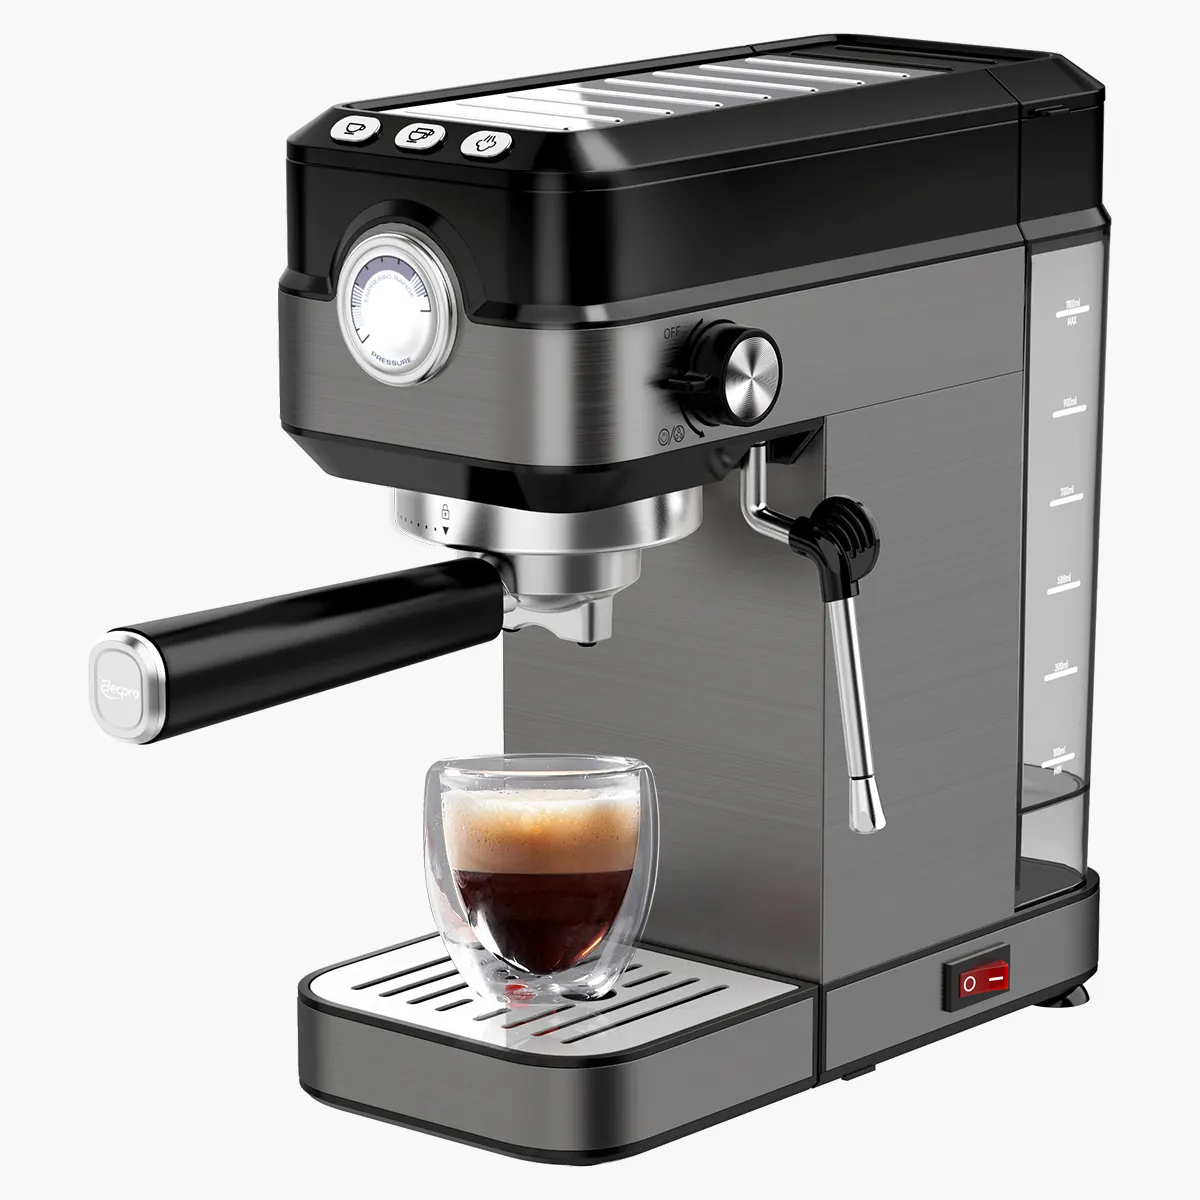 ماكينة صنع القهوة الاسبريسو بمقاس 51 مم و58 مم وتتميز بخزان مياه قابل للإزالة 92 درجة وتصلح للمنازل